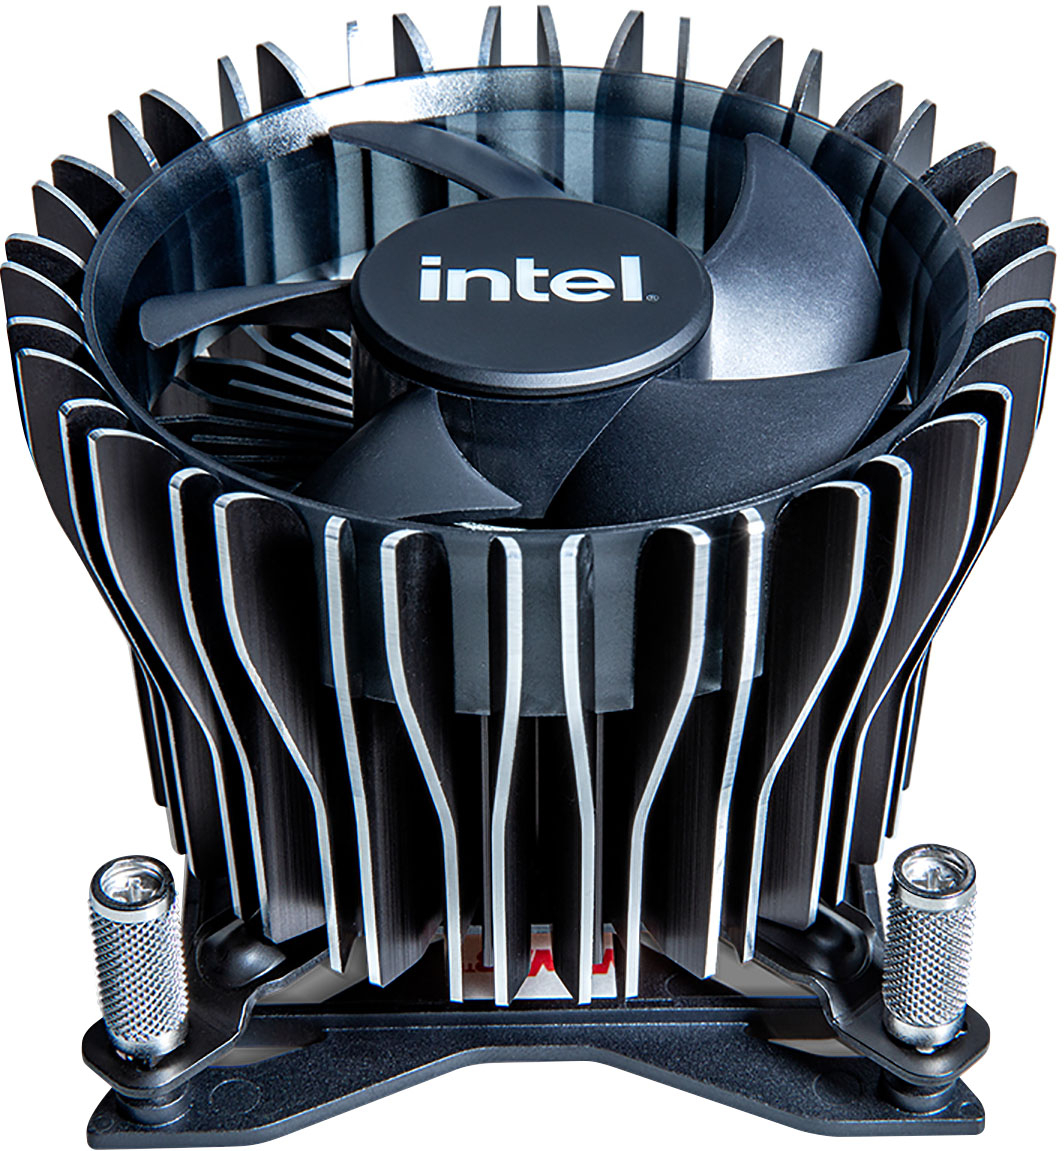 Intel's premium 12th Gen CPU cooler